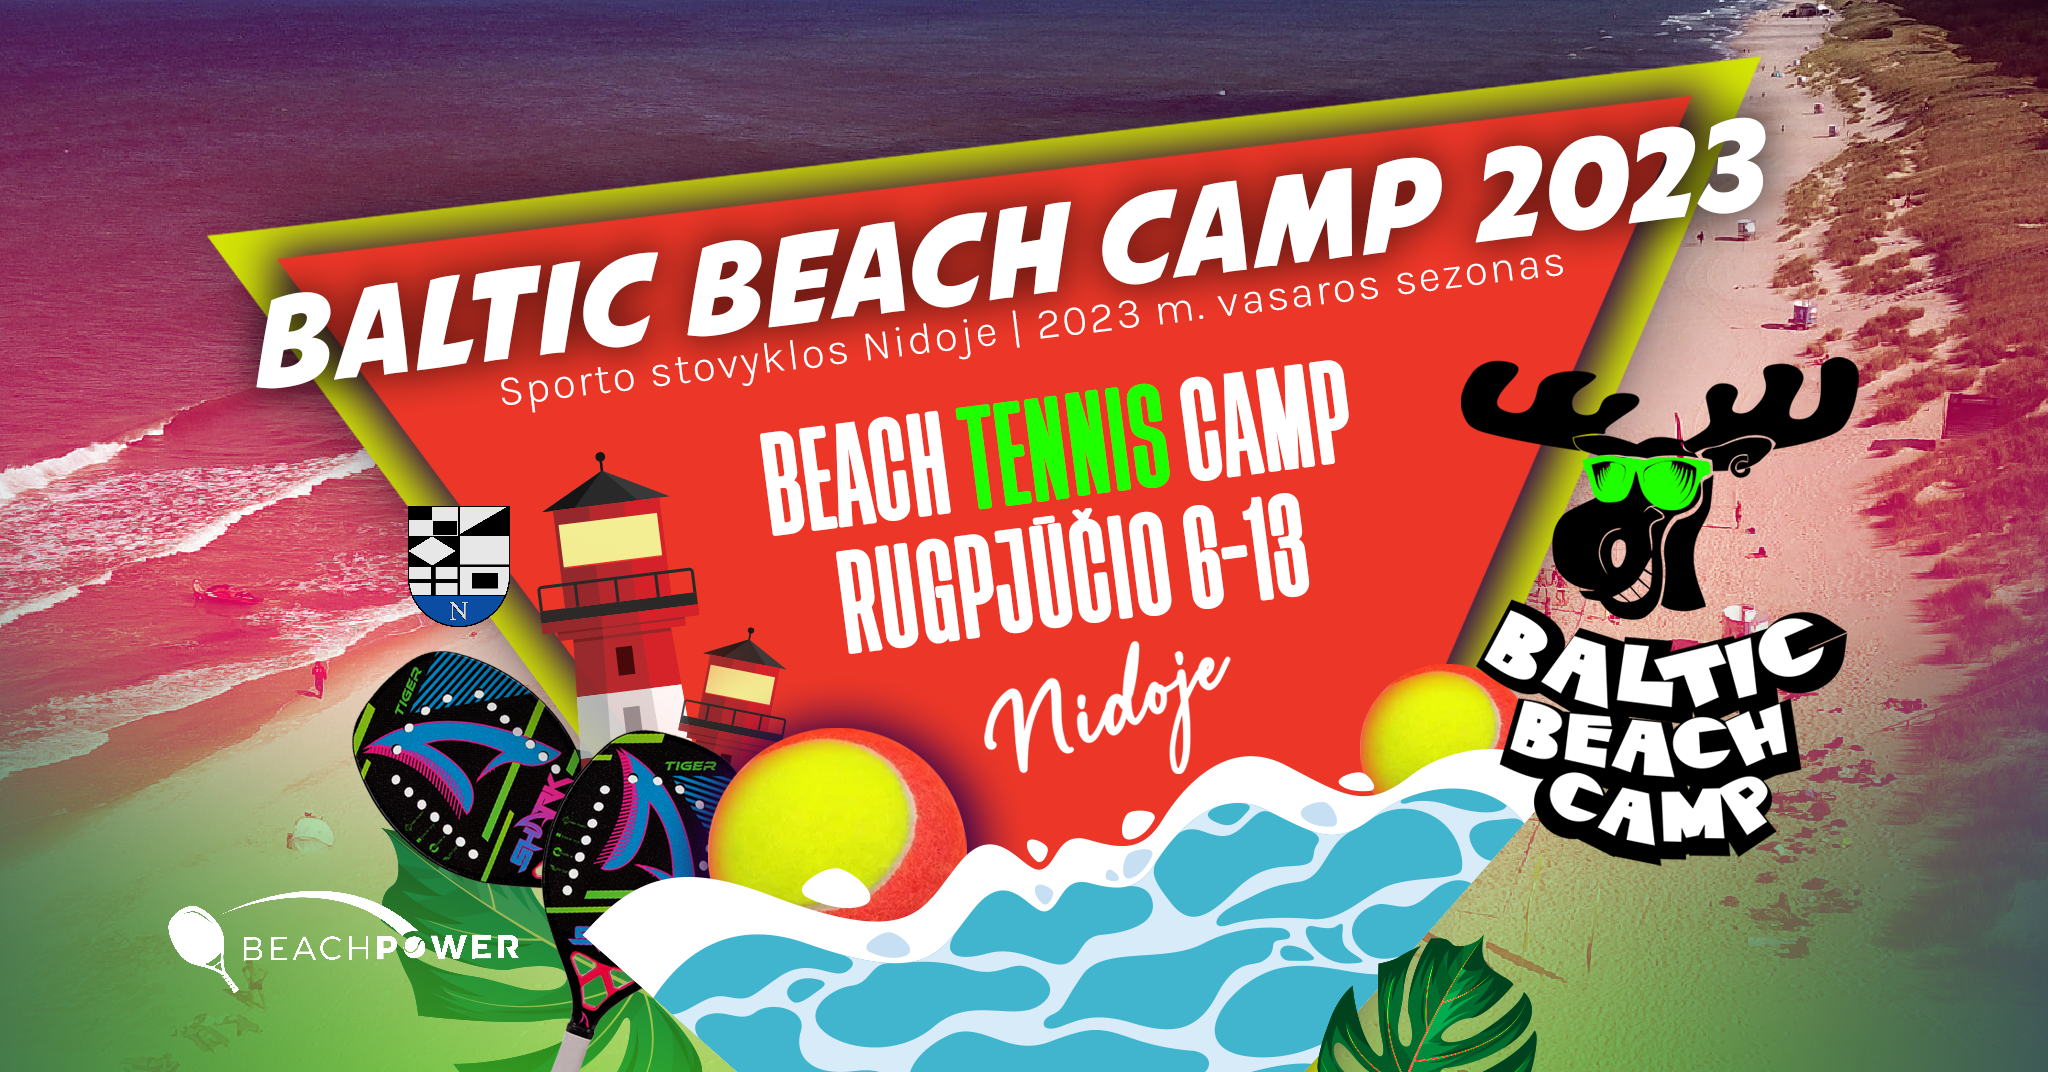 bbc beach tennis camp fb event update